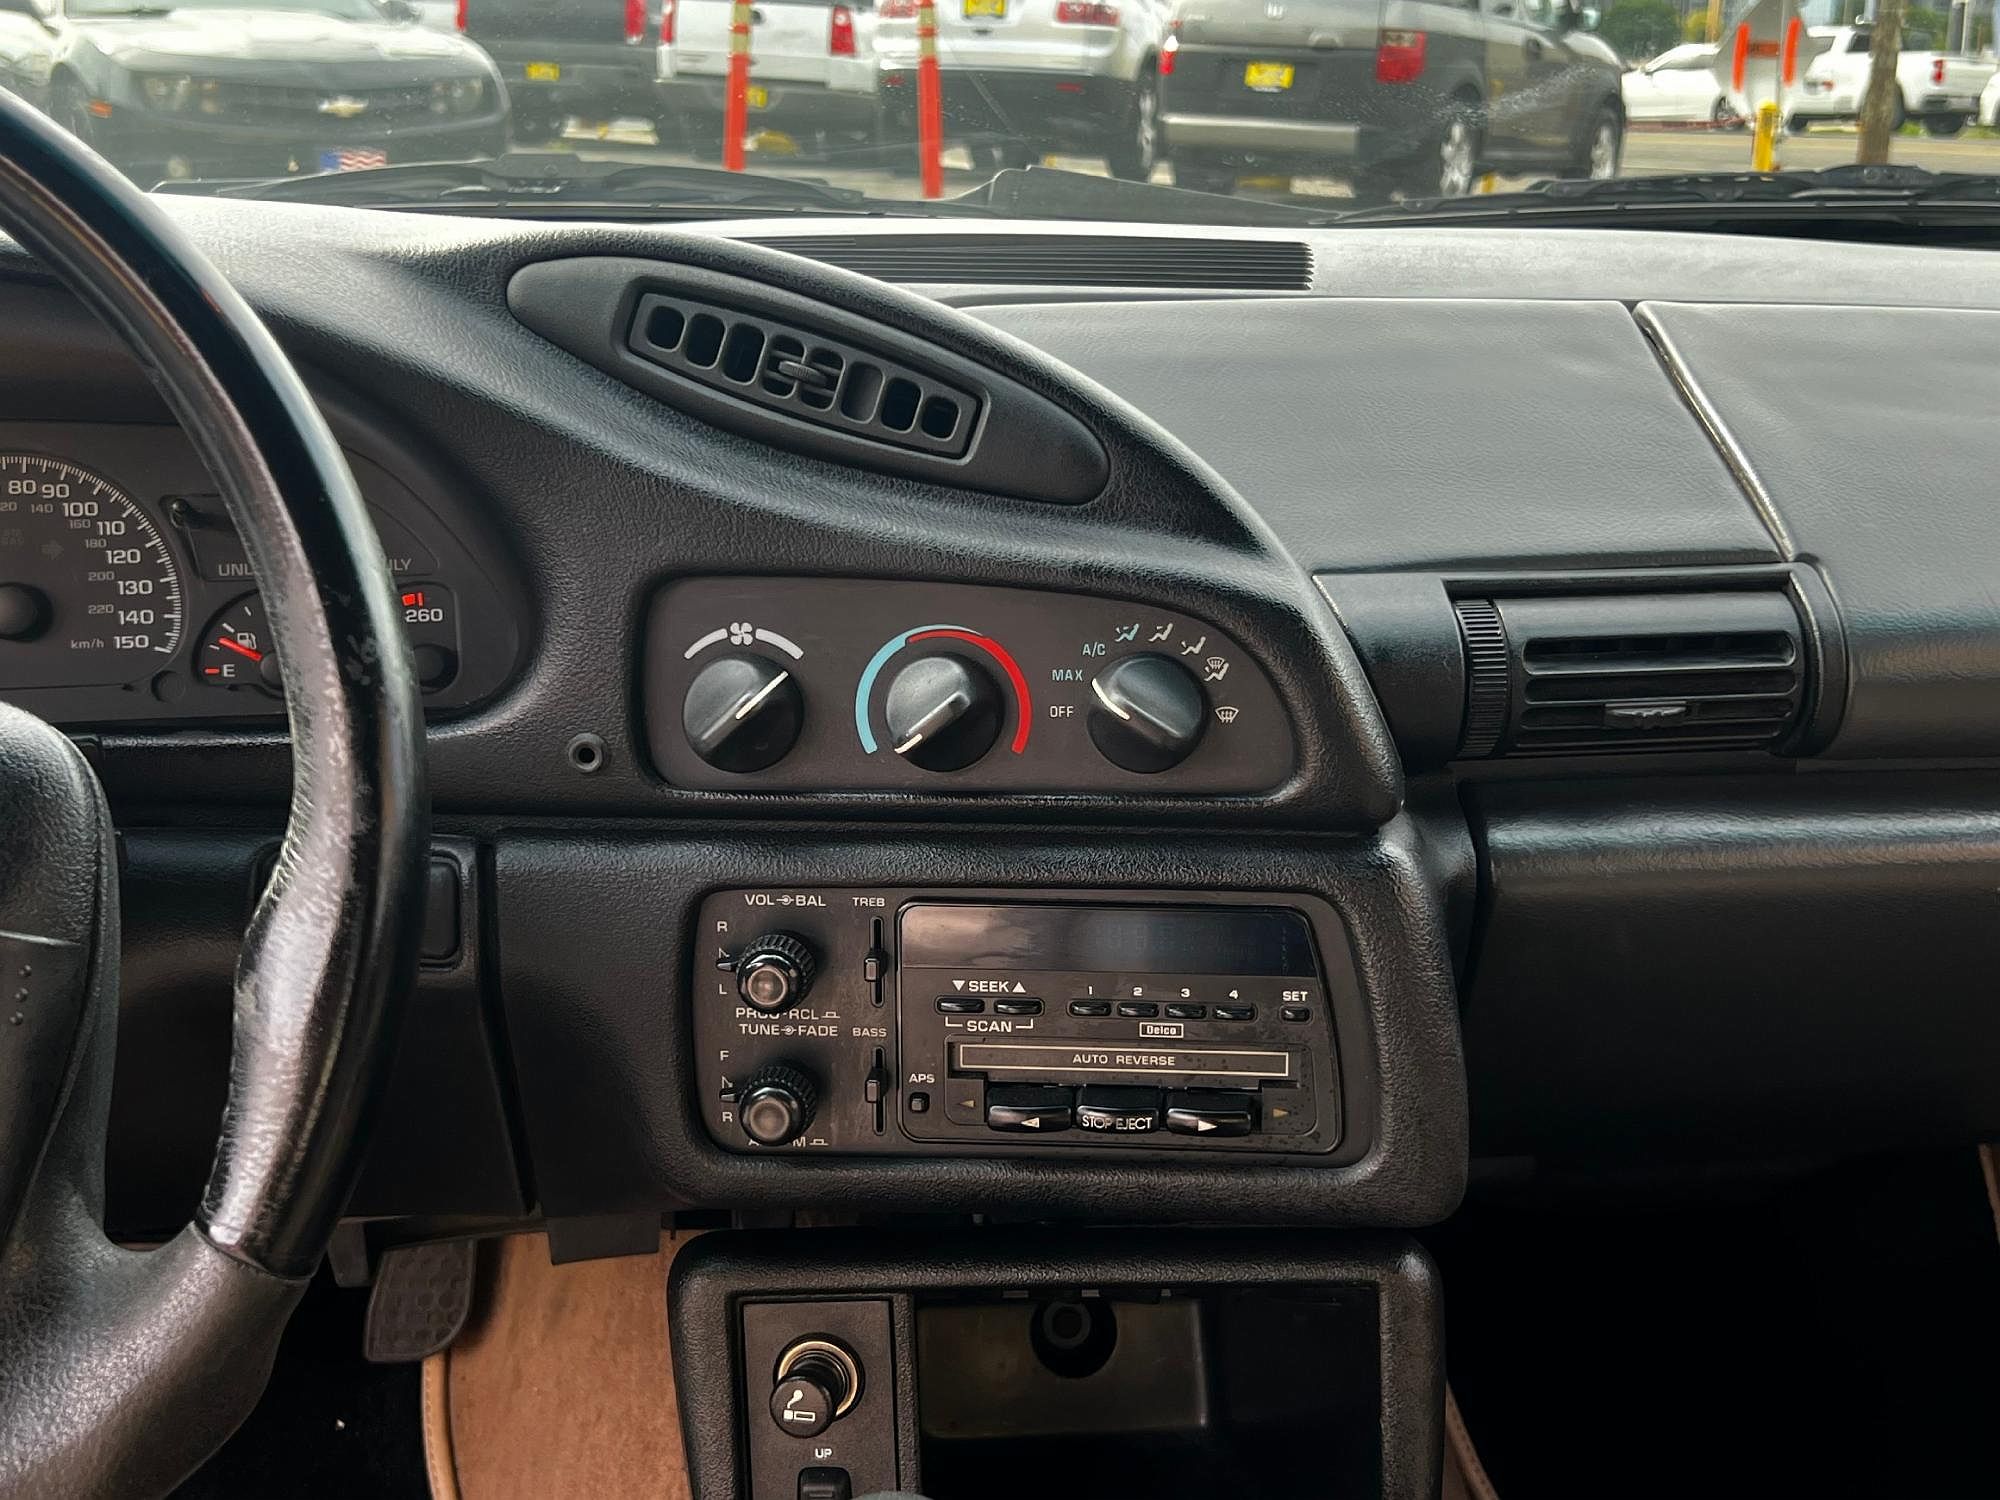 1995 Chevrolet Camaro Z28 image 25